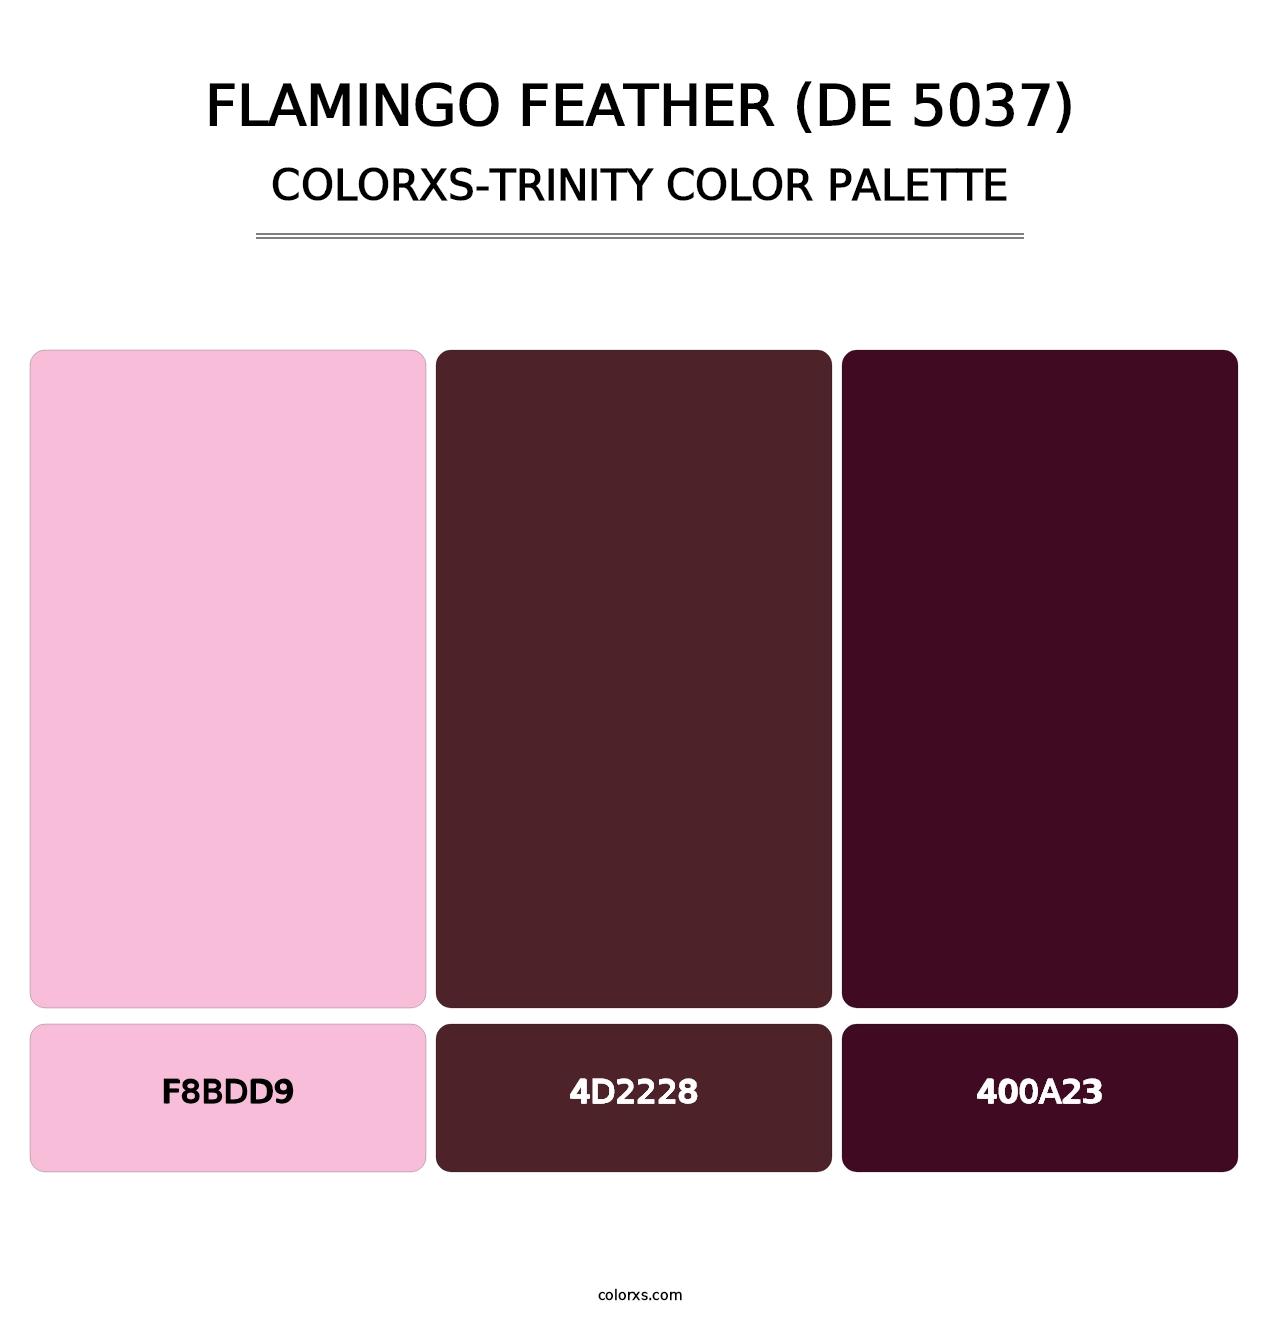 Flamingo Feather (DE 5037) - Colorxs Trinity Palette